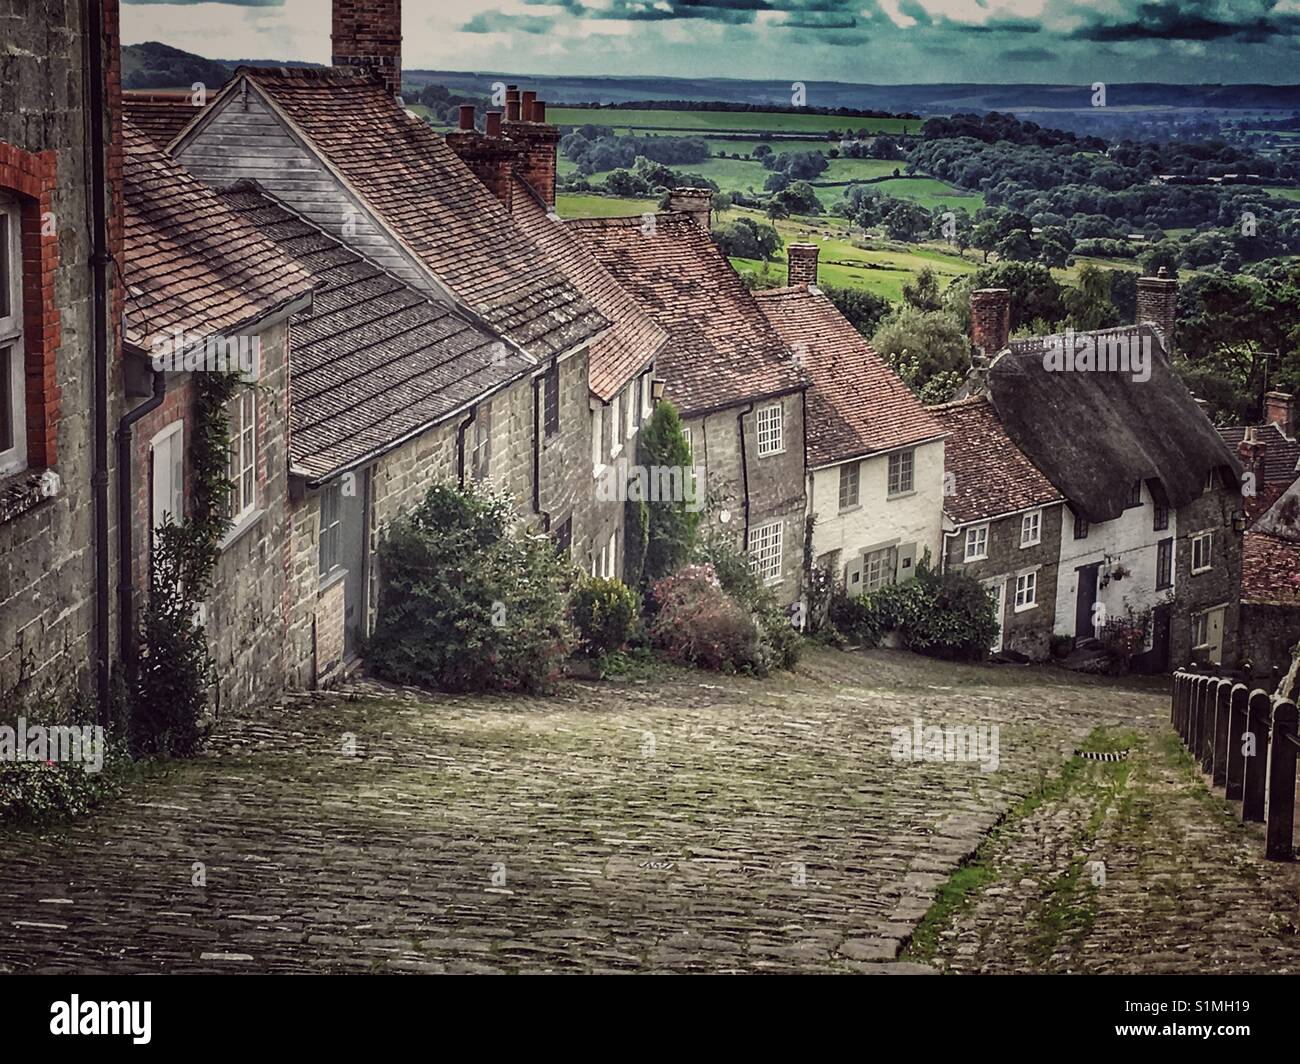 Gold Hill, bekannt als die Lage der Hovis Brot Anzeige. Shaftesbury, Dorset, England Stockfoto